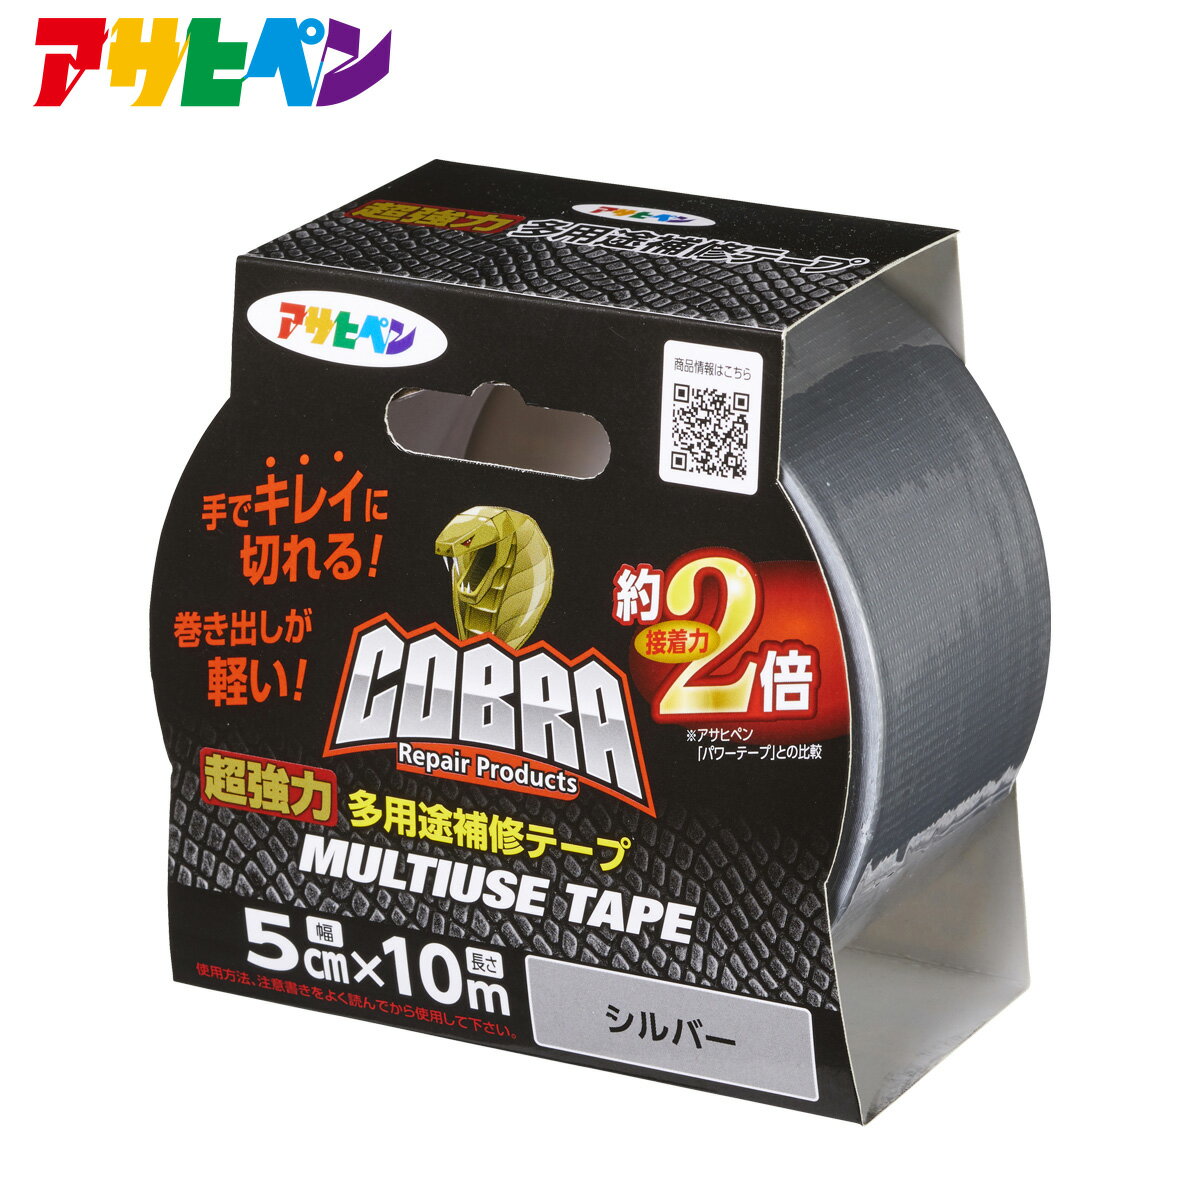 補修テープ COBRA 超強力多用途補修テープ CB-010 シルバー 5cm 10m アサヒペン 防災 緊急補修 ダクトテープ 粘着テープ 強粘着